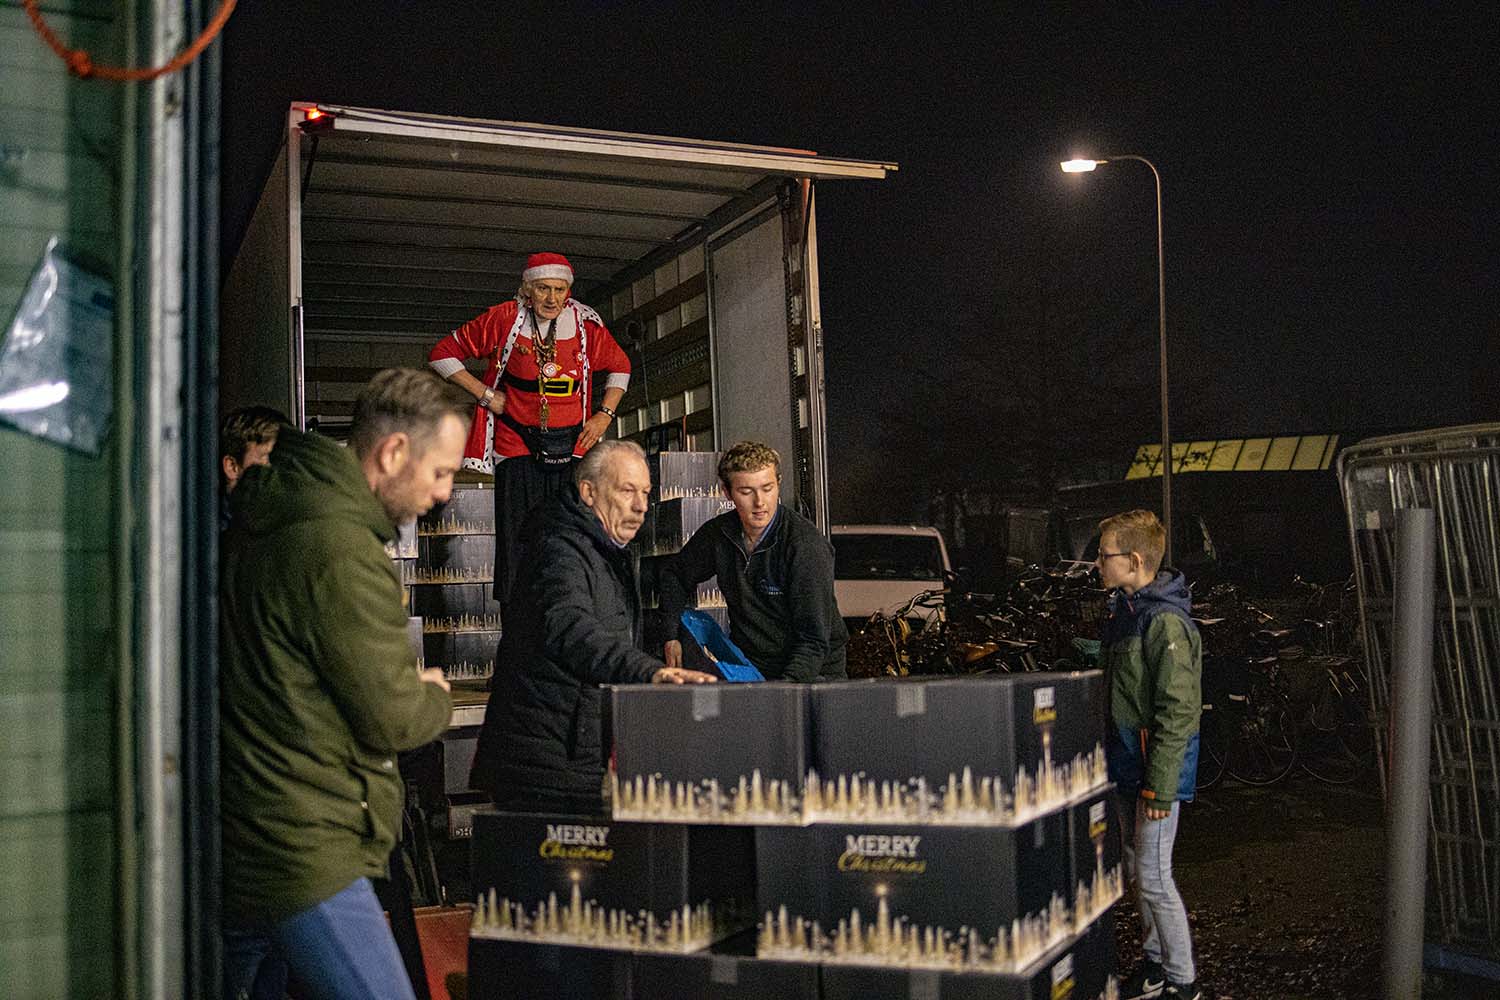 Inpakavond Kerstpakkettenactie 2019 | KerstZwolle.nl